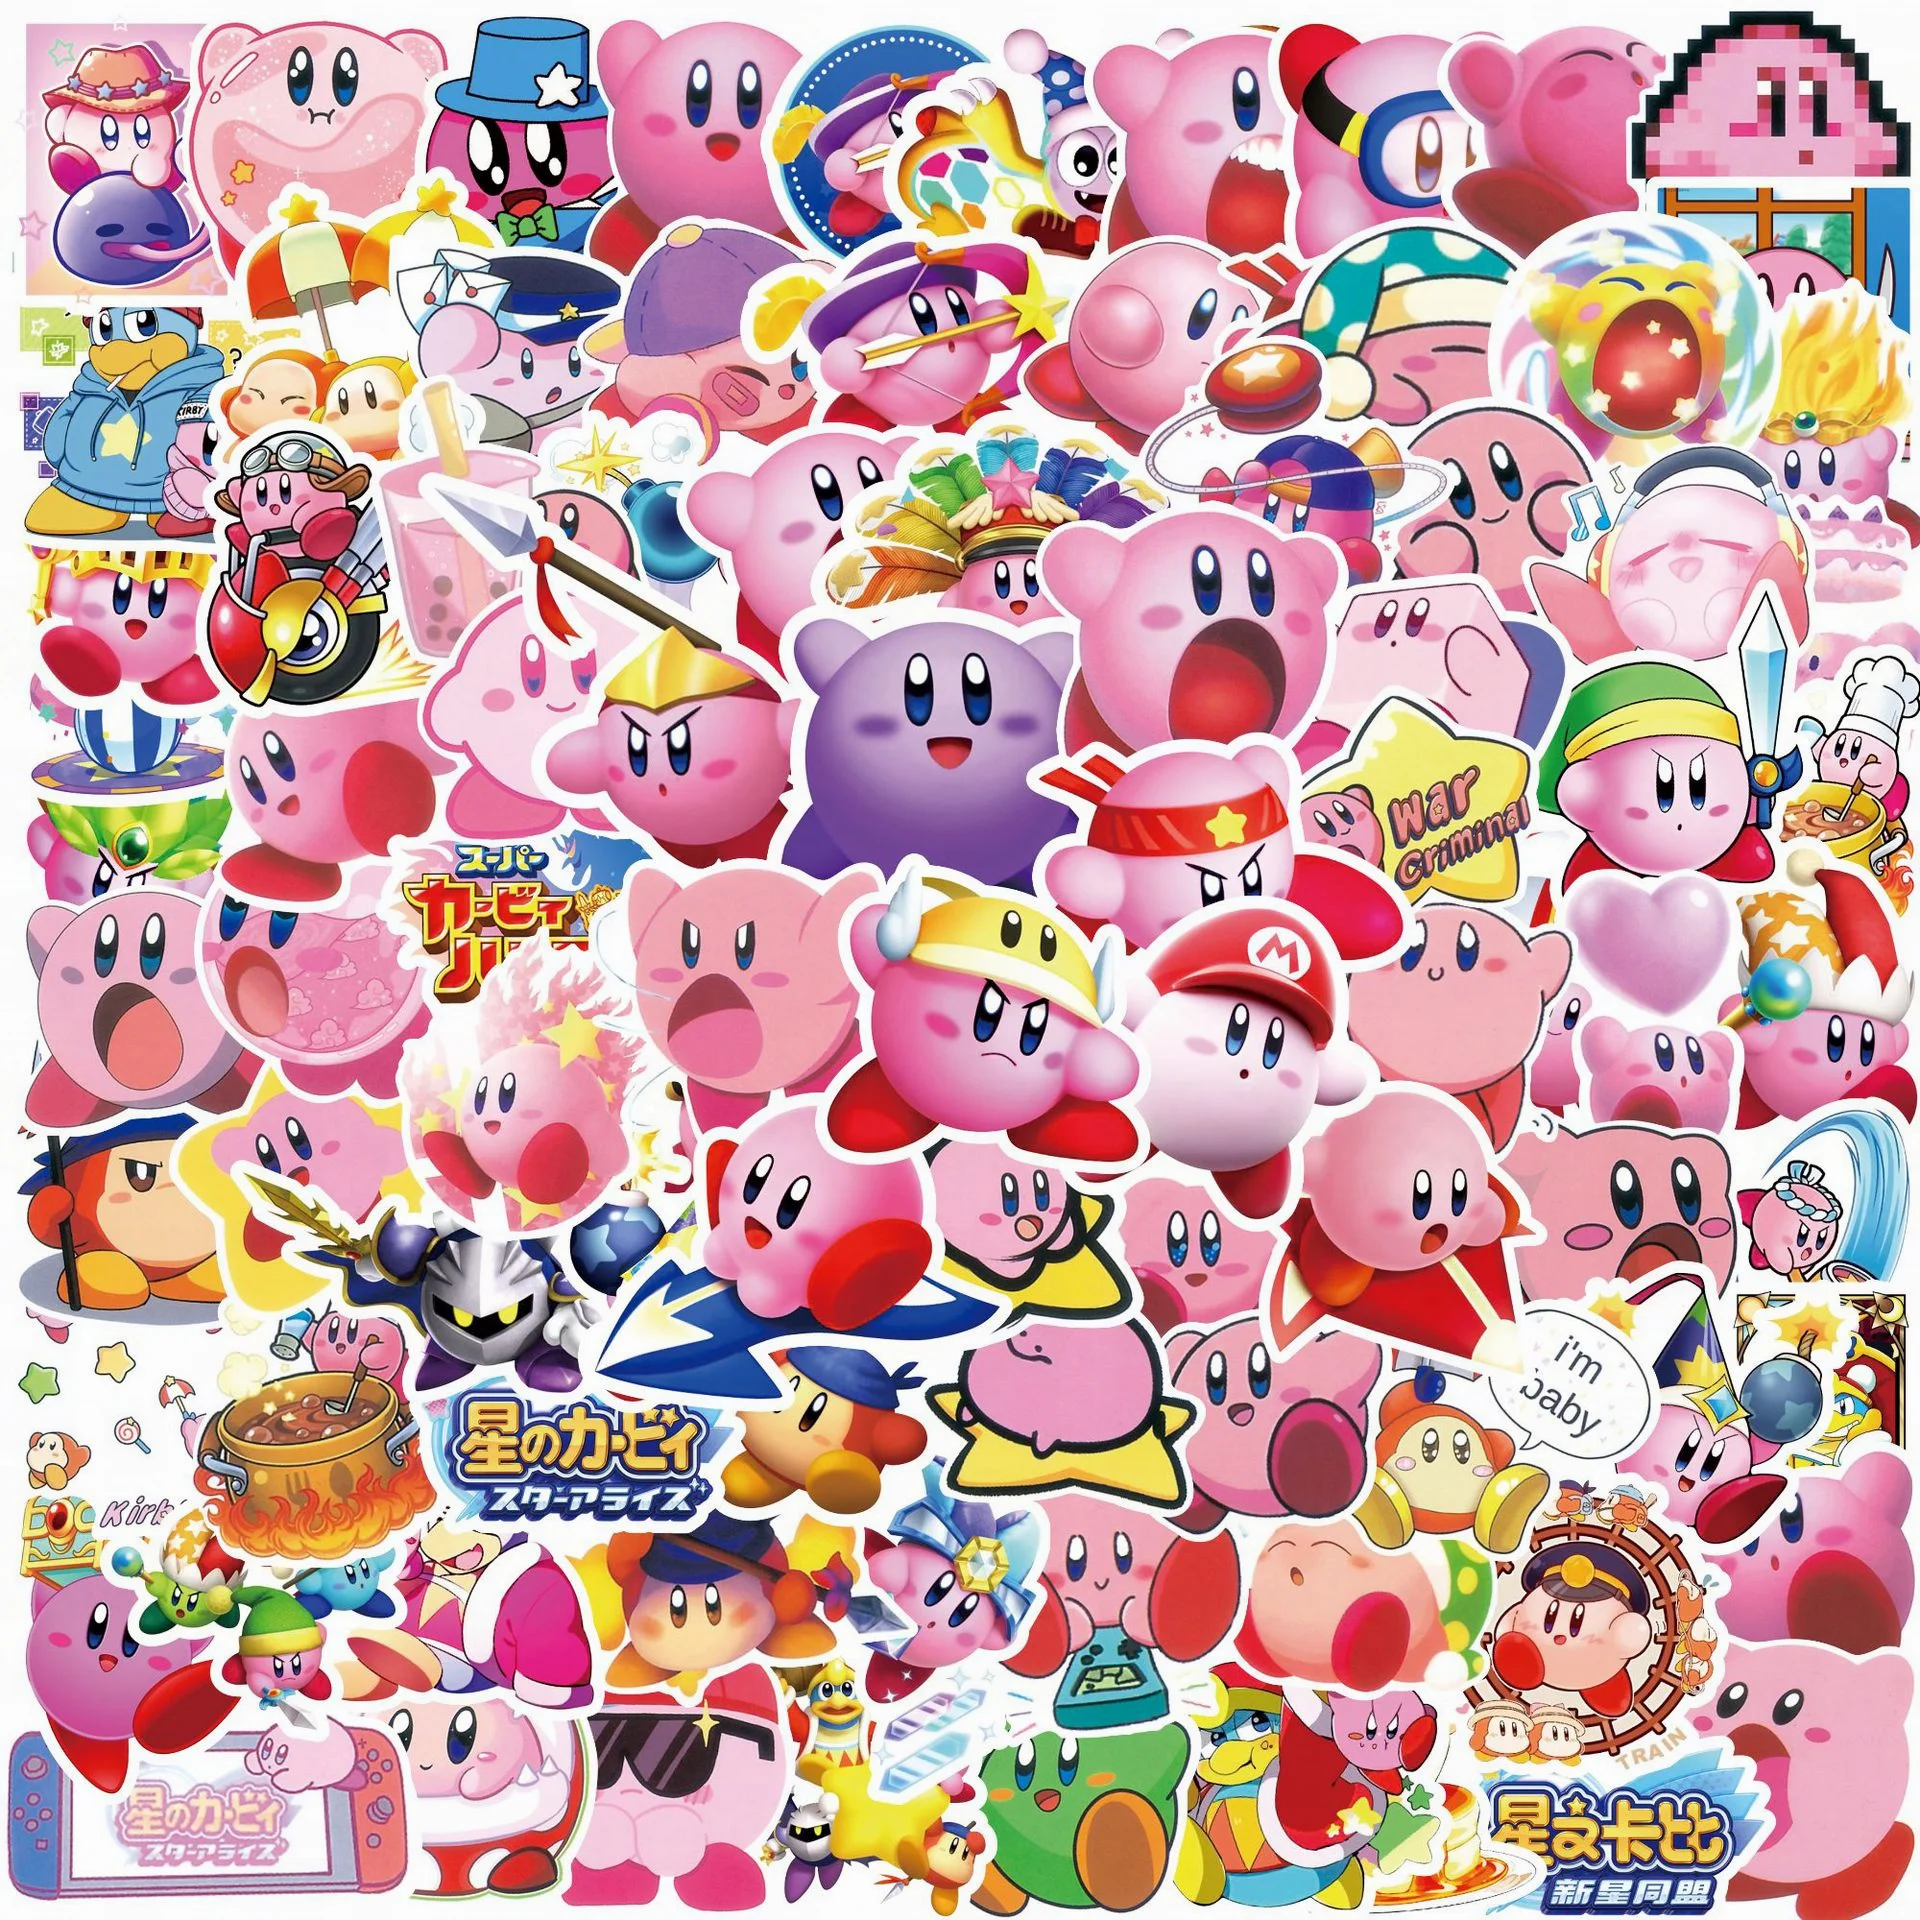 100+] Cute Gaming Wallpapers